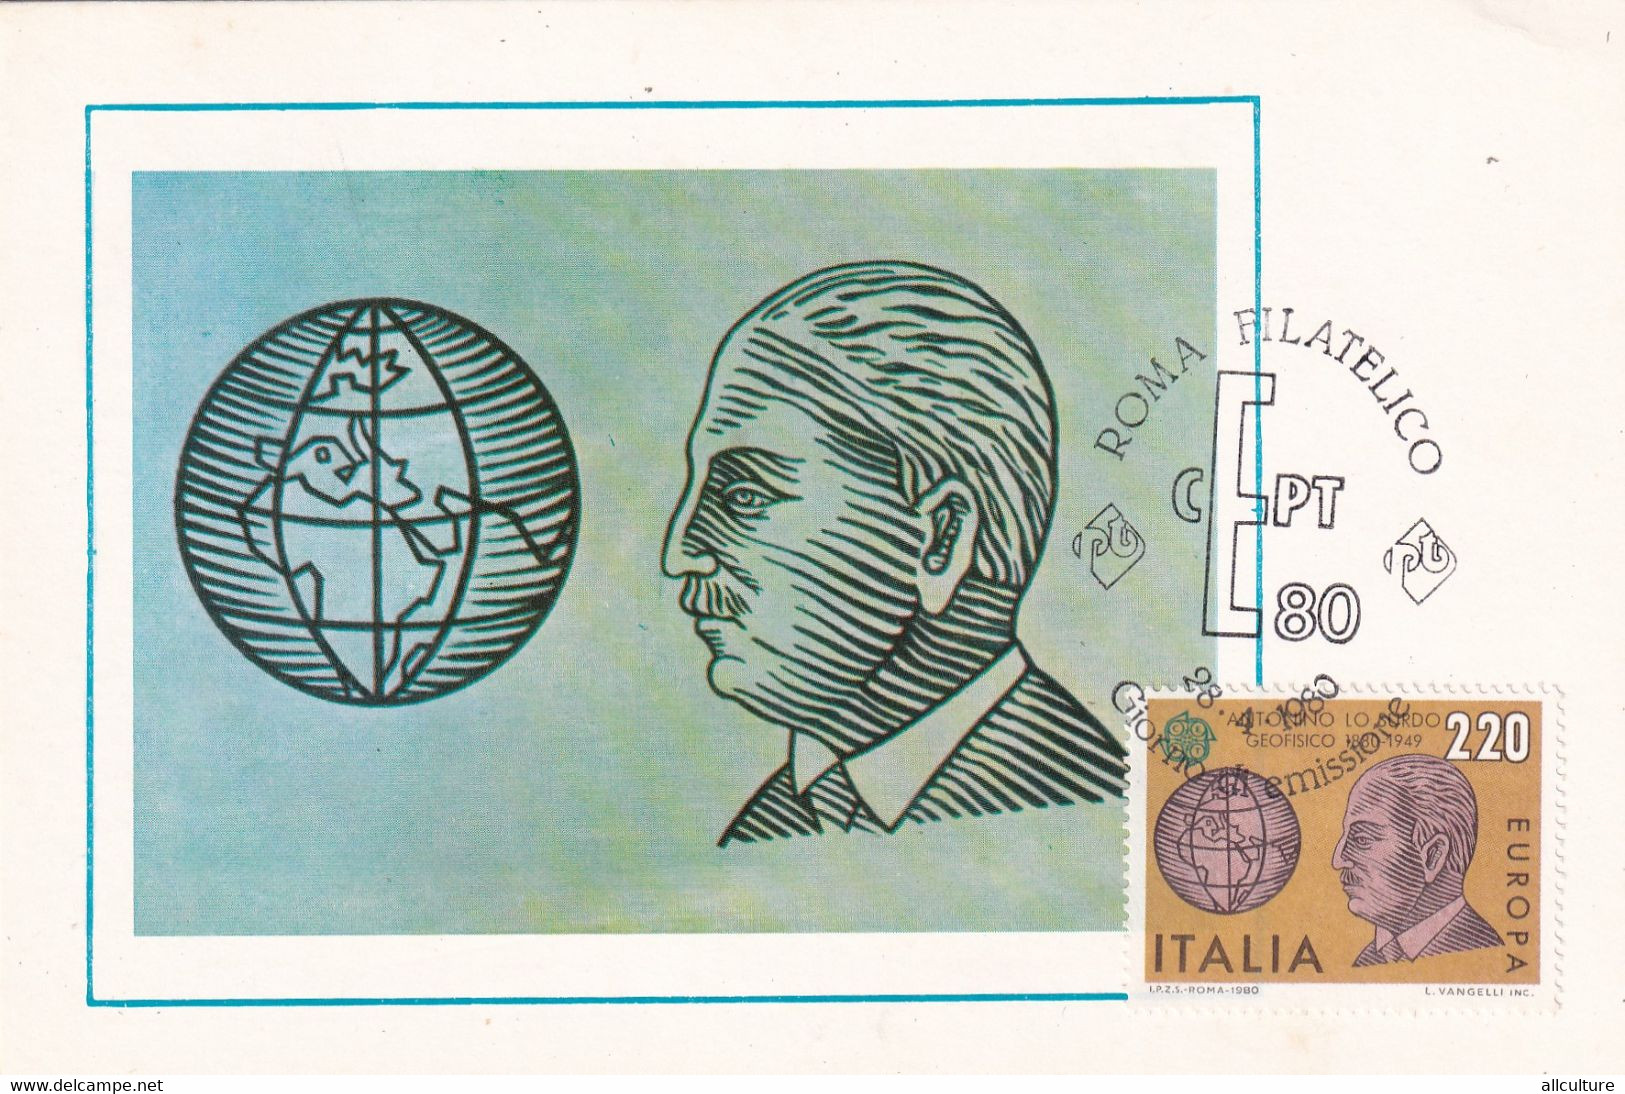 A10908- ANTONINO LO SURDO, GEOPHYSICAL, ROMA FILATELICO 1980 MAXIMUM CARD ITALIA  USED STAMPS - Cartes-Maximum (CM)